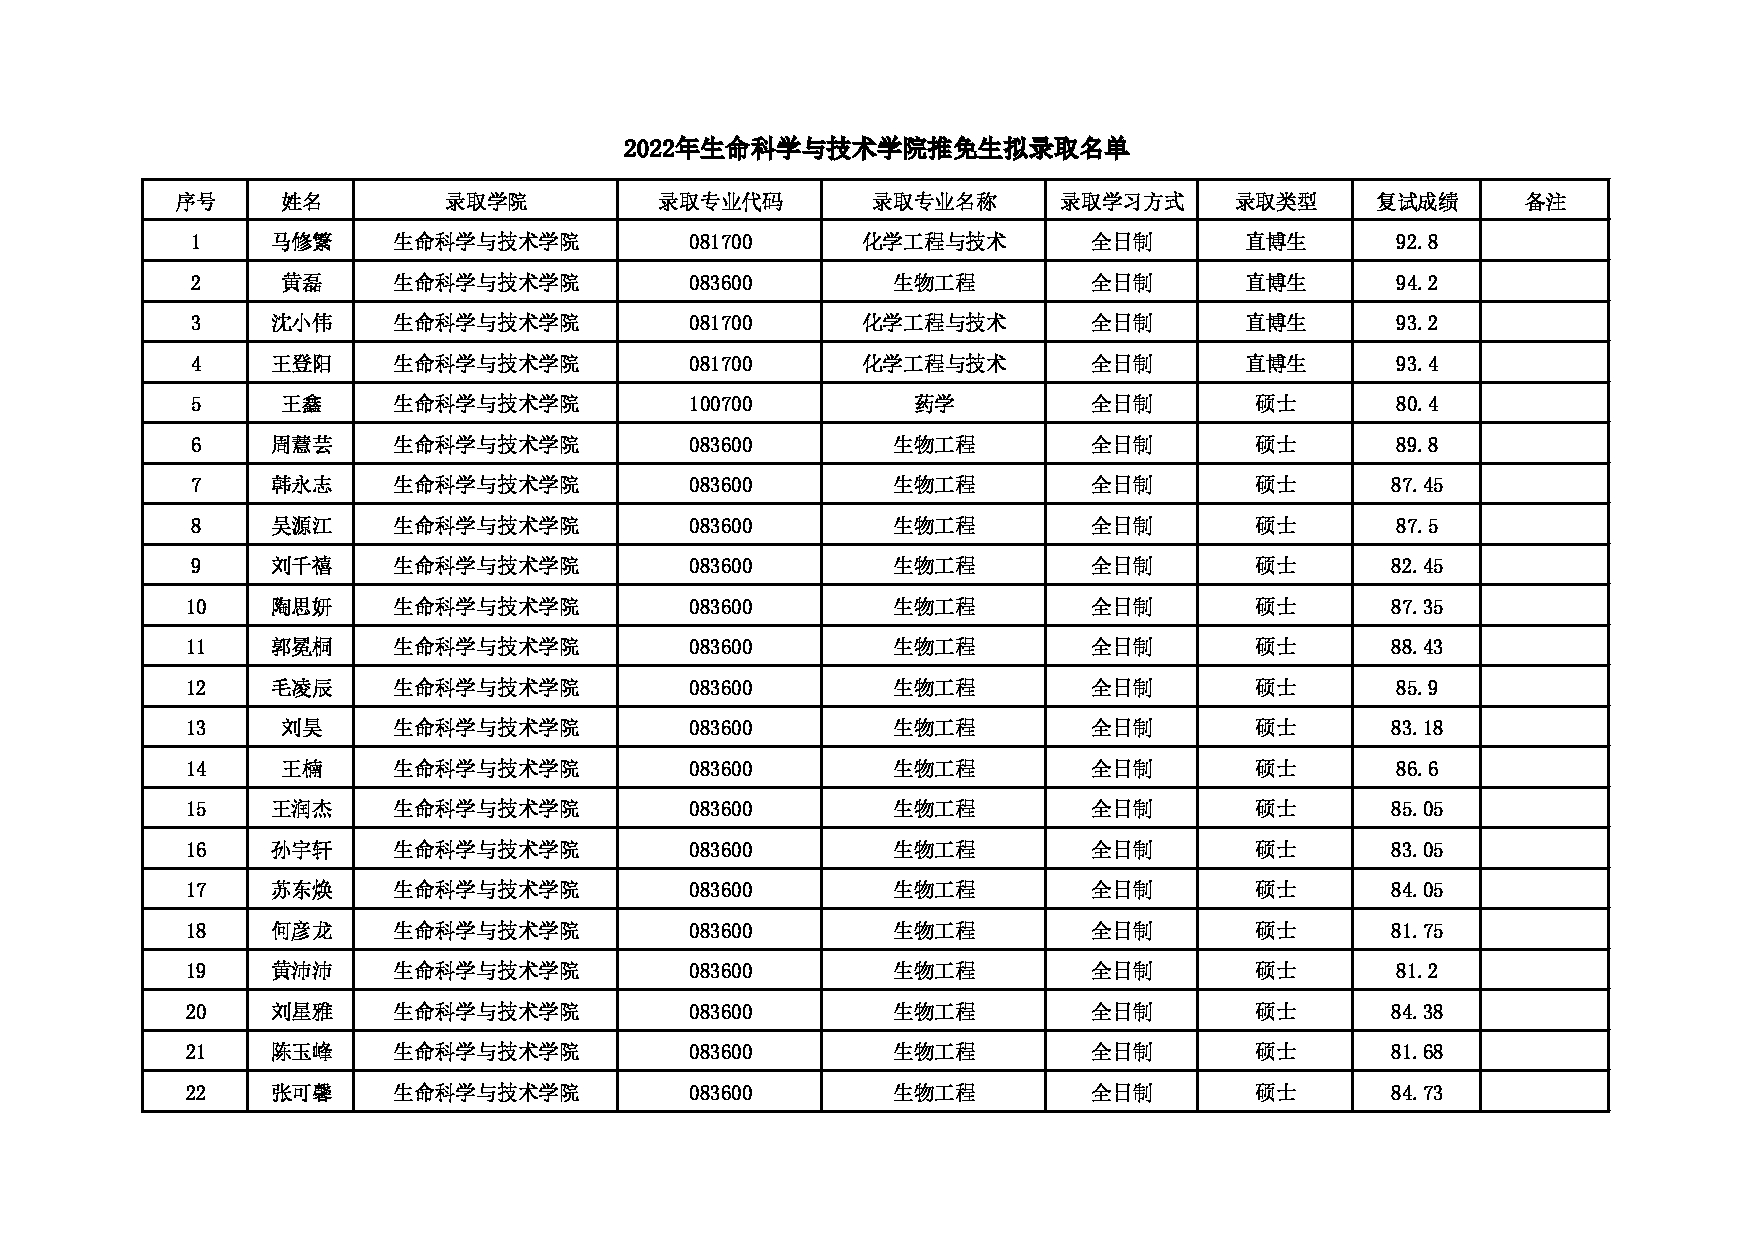 2022考研拟录取名单：北京化工大学2022年生命科学与技术学院推免生拟录取名单 第1页